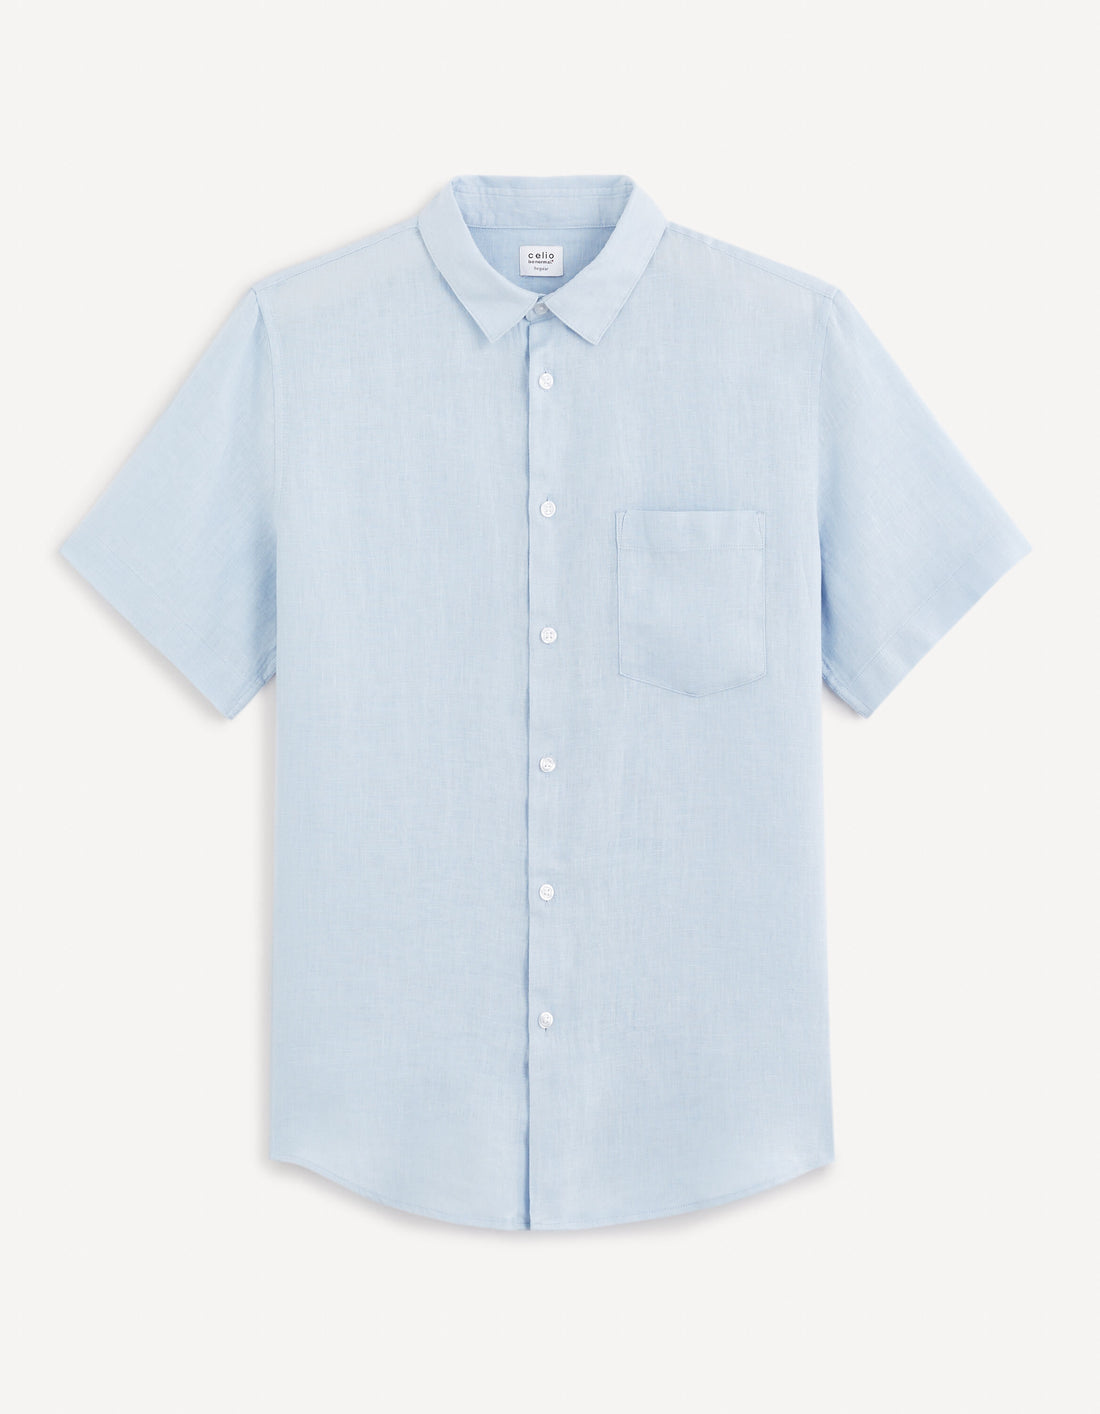 Regular Shirt 100% Linen_DAMARLIN_LIGHT BLUE_01